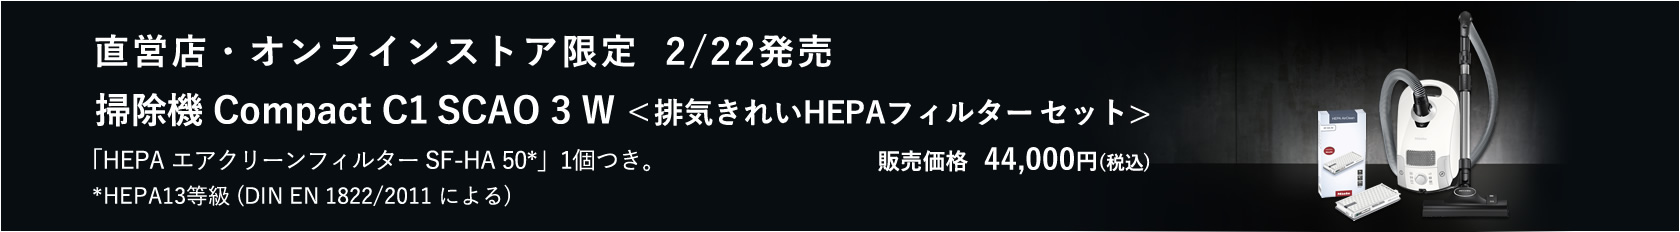 【2022年限定】Miele 掃除機 Compact C1 SCAO 3 W ＜排気きれいHEPAフィルターセット＞ 発売